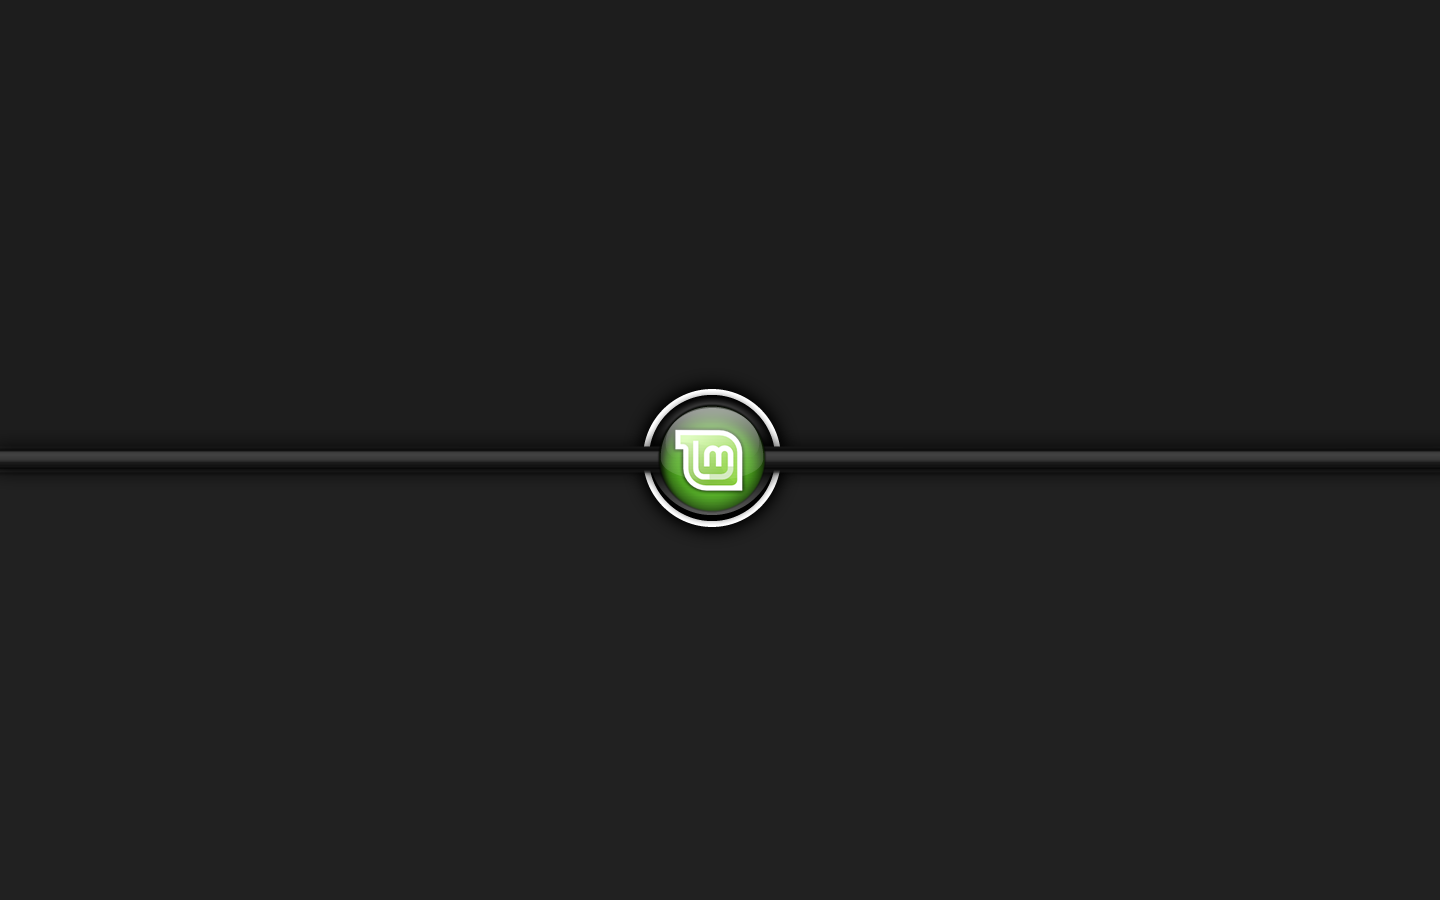 Linux Mint Logo Black Background Image Wallpaper For Desktop Wallsev